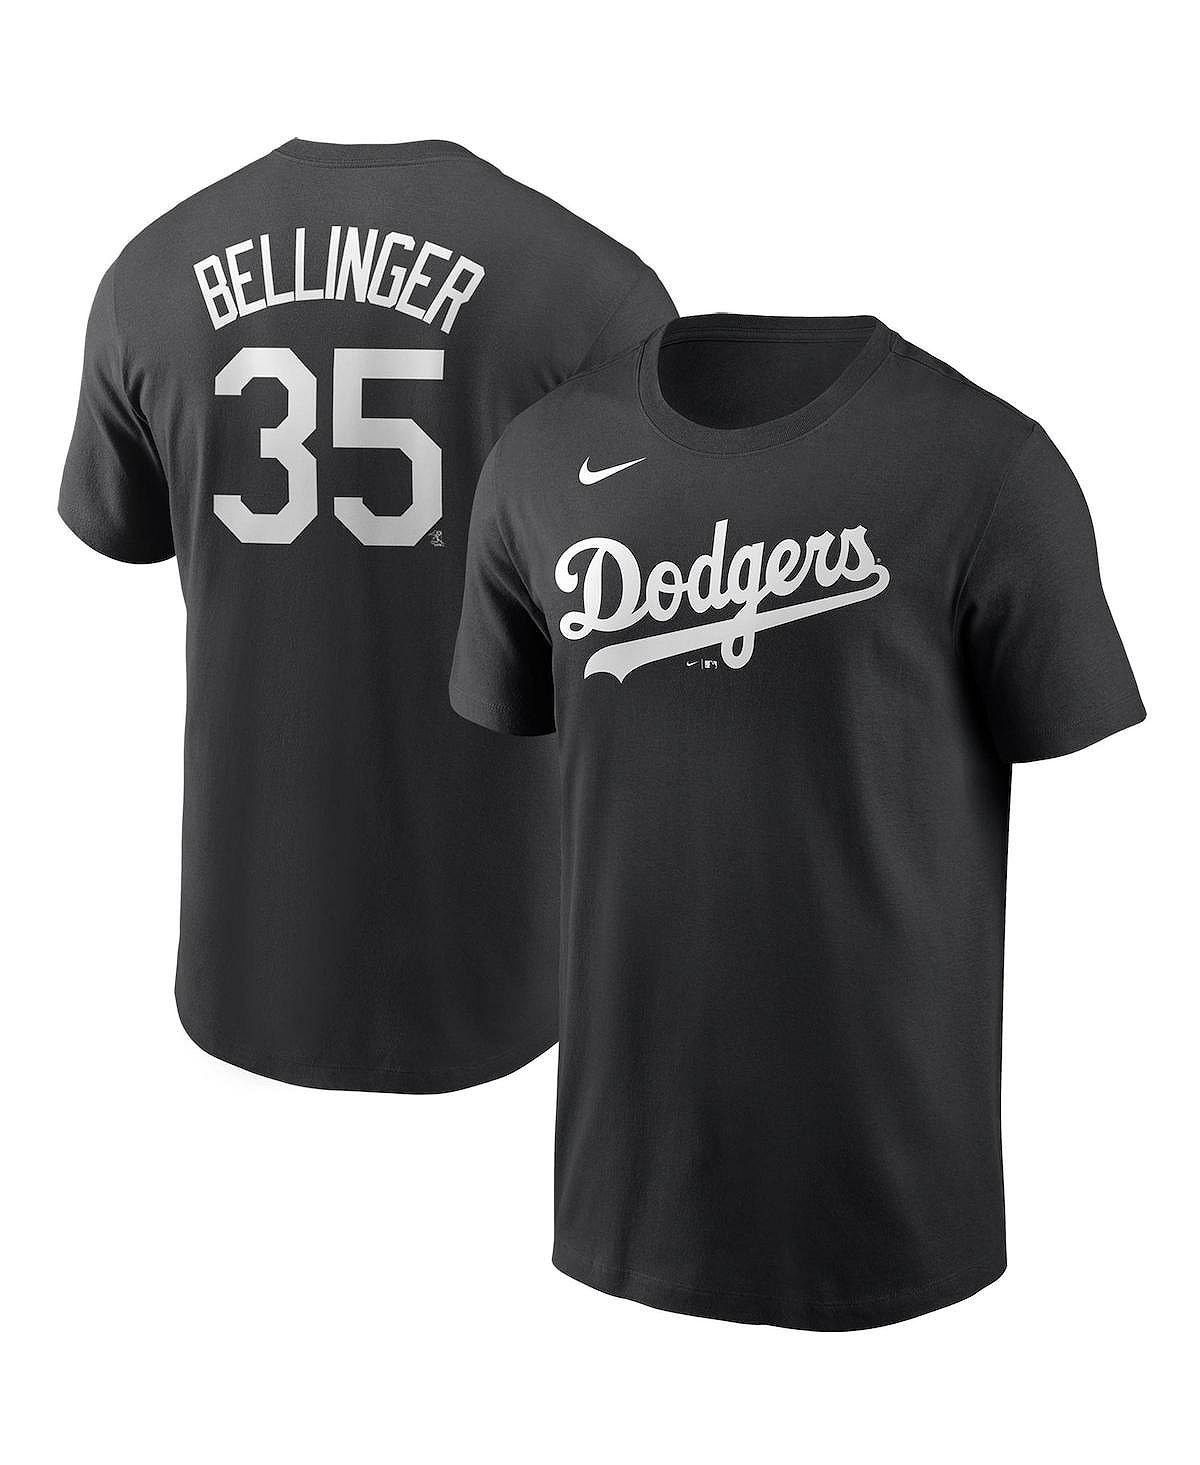 Мужская футболка с именем и номером игрока Cody Bellinger Los Angeles Dodgers Nike мужская футболка kris bryant purple colorado rockies с именем и номером игрока nike фиолетовый